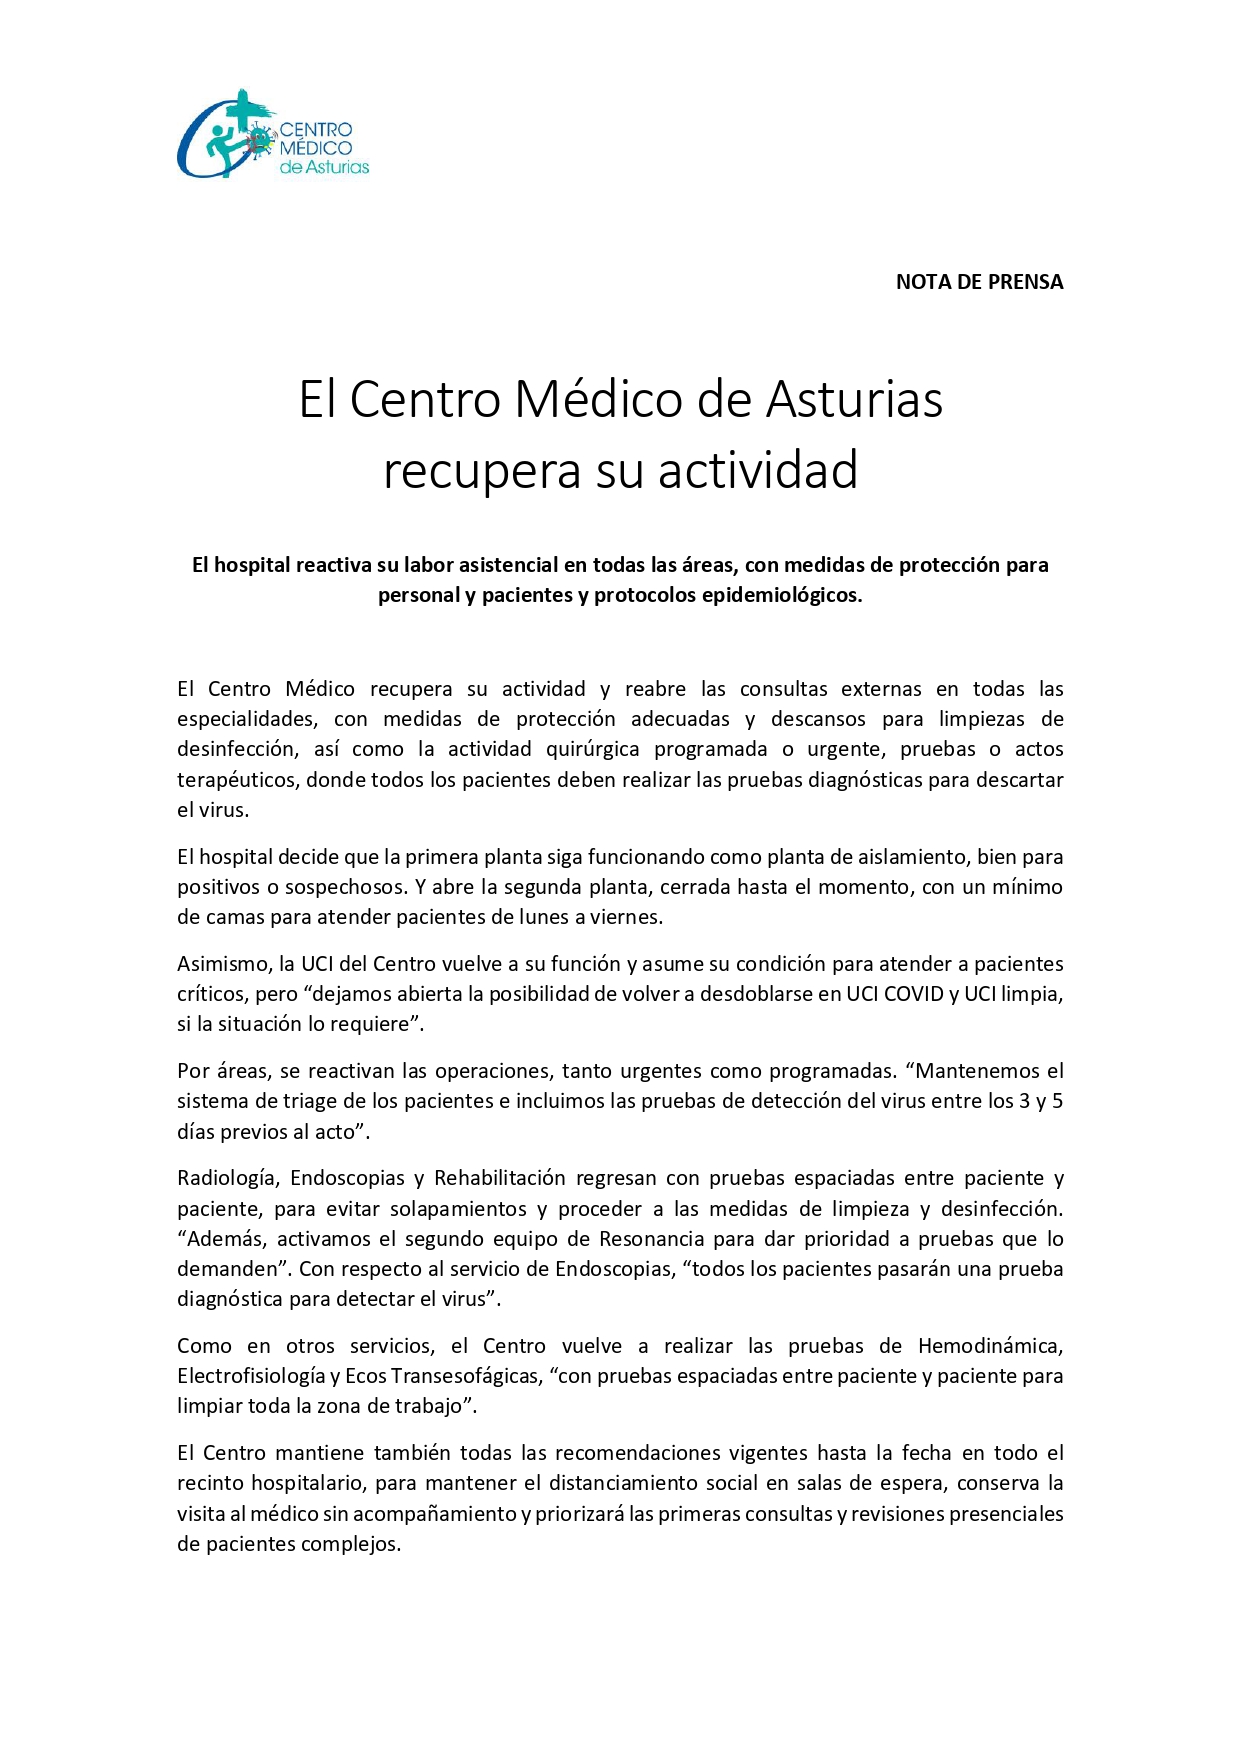 El Centro Médico de Asturias recupera su actividad